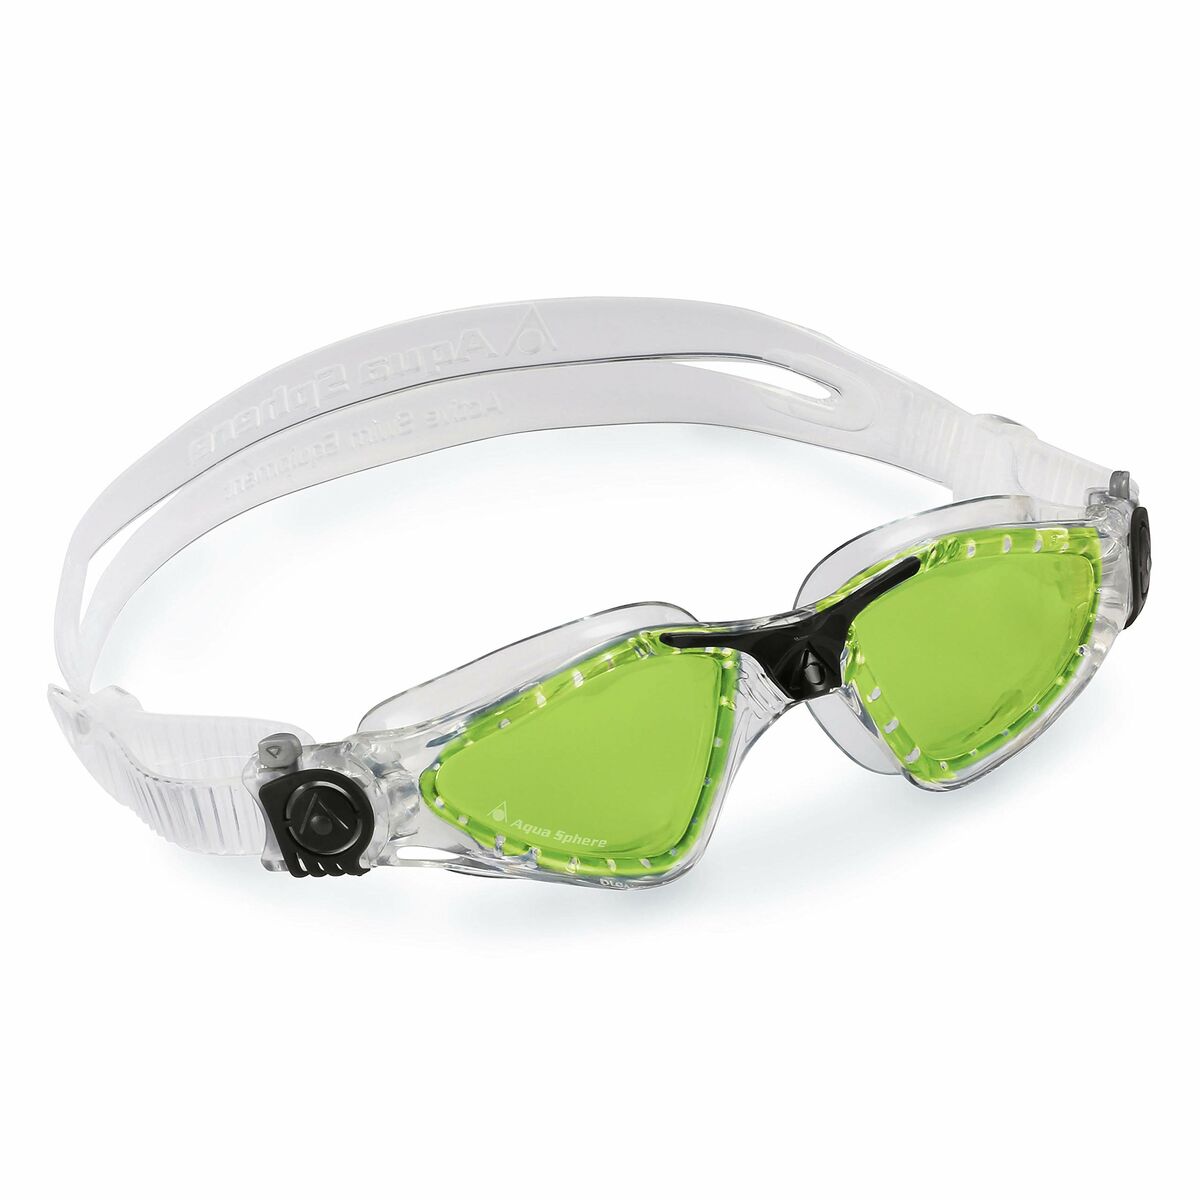 Swimming Goggles Aqua Sphere Kayenne Green One size